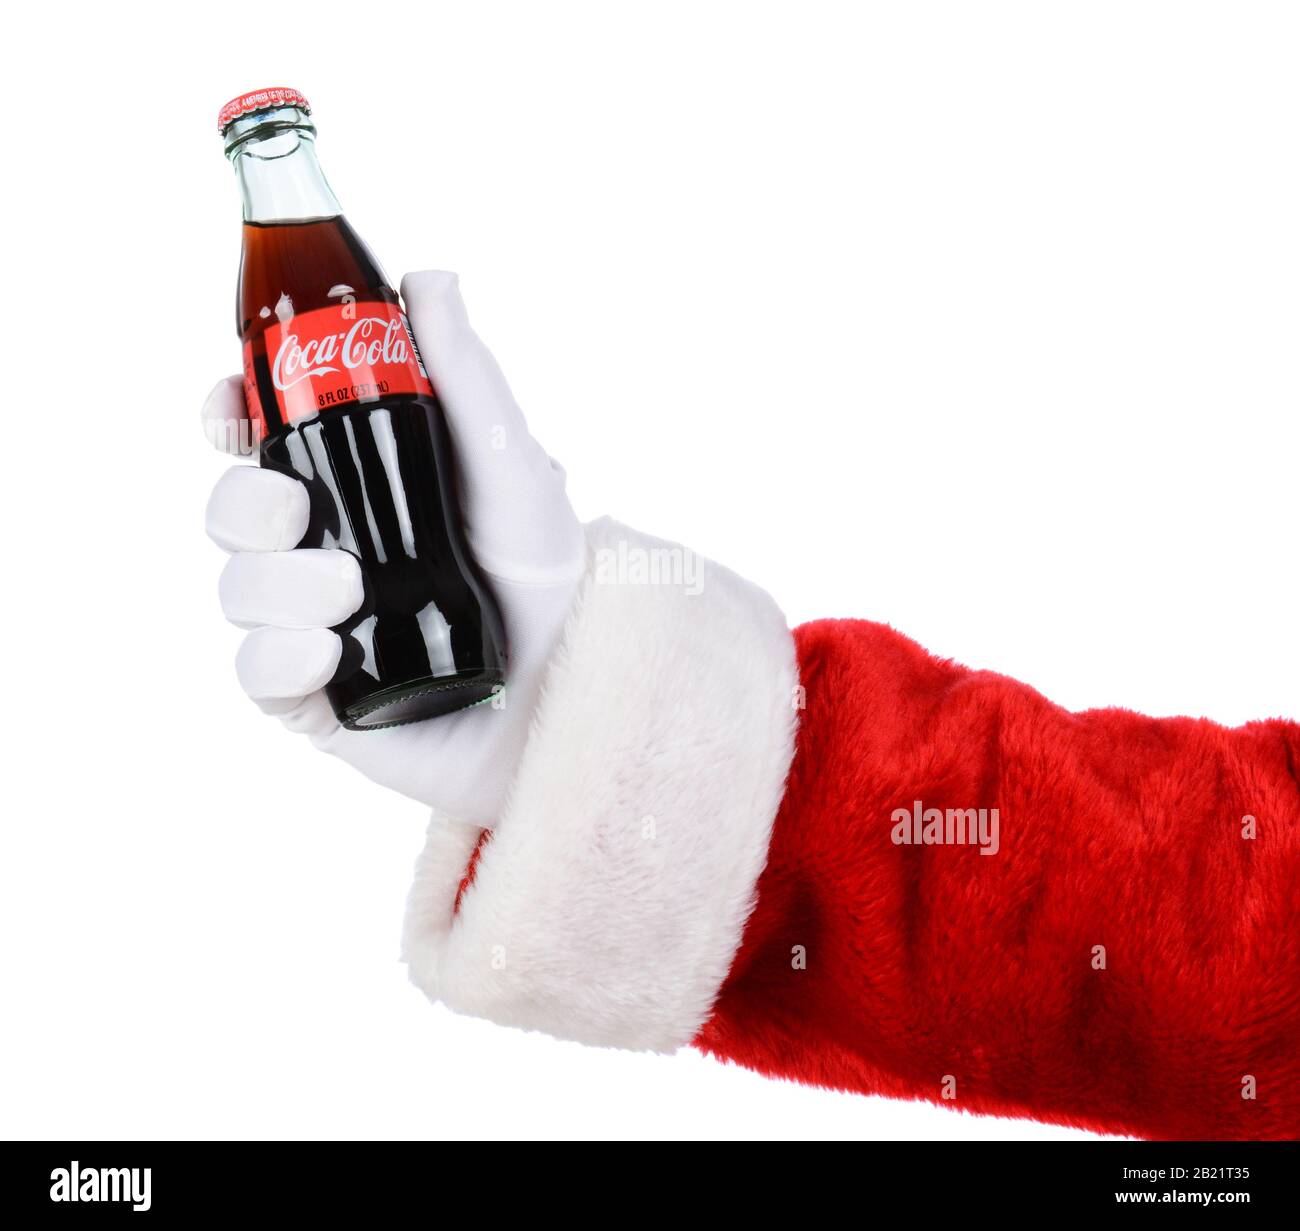 Irvine, CA - 12. DEZEMBER 2014: Weihnachtsmann hält eine Flasche Coca-Cola Classic. Coca-Cola ist eines der beliebtesten kohlensäurehaltigen Getränke der Welt. Stockfoto